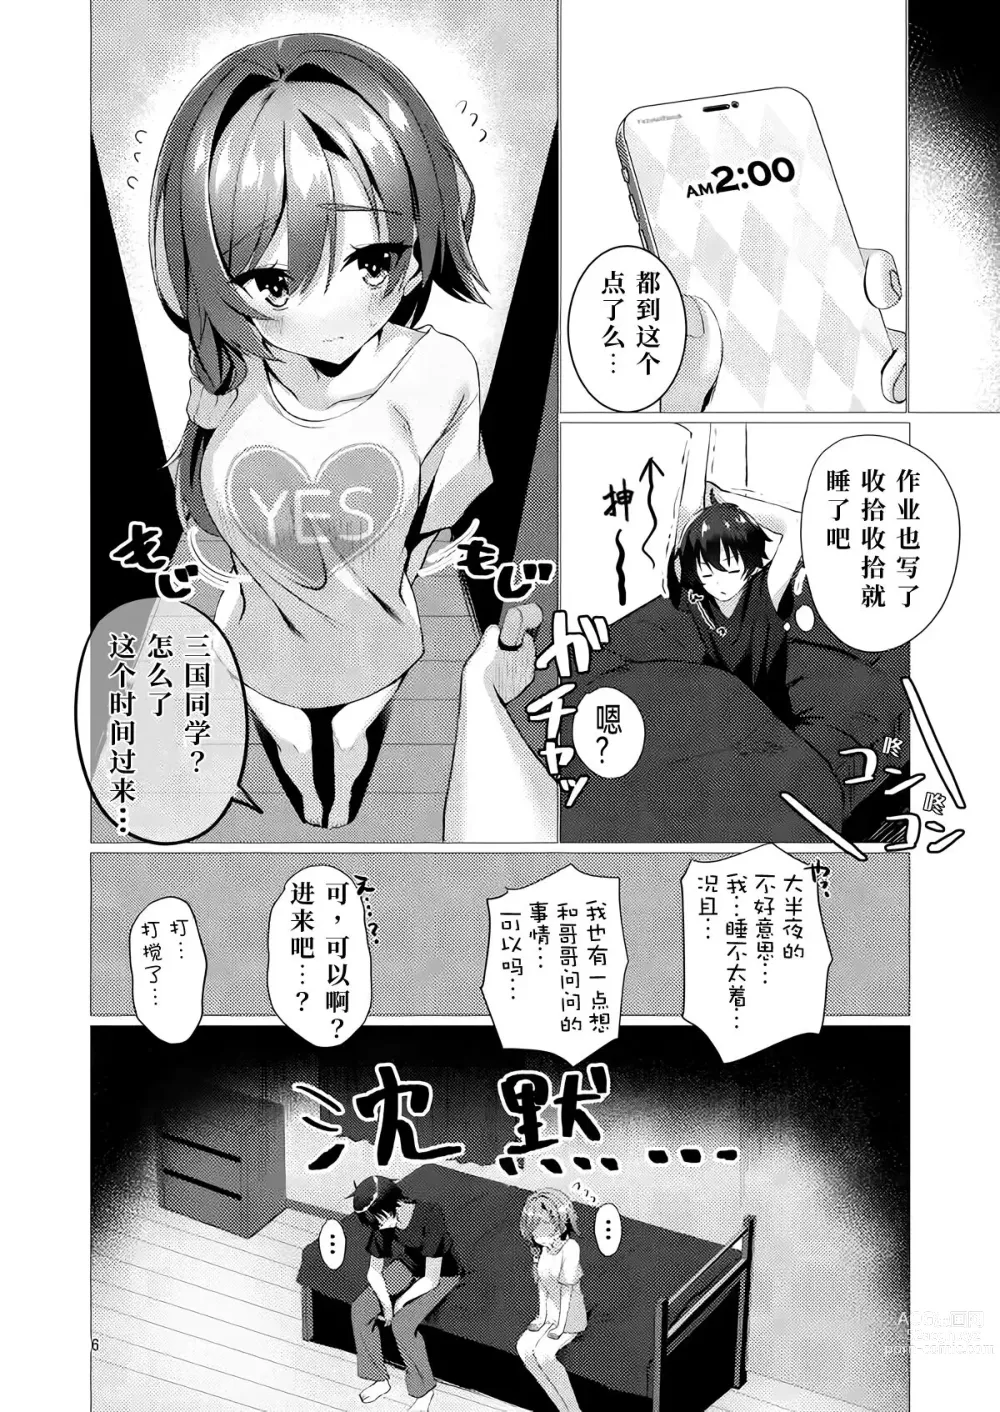 Page 5 of doujinshi 若已与你在梦中相遇过。